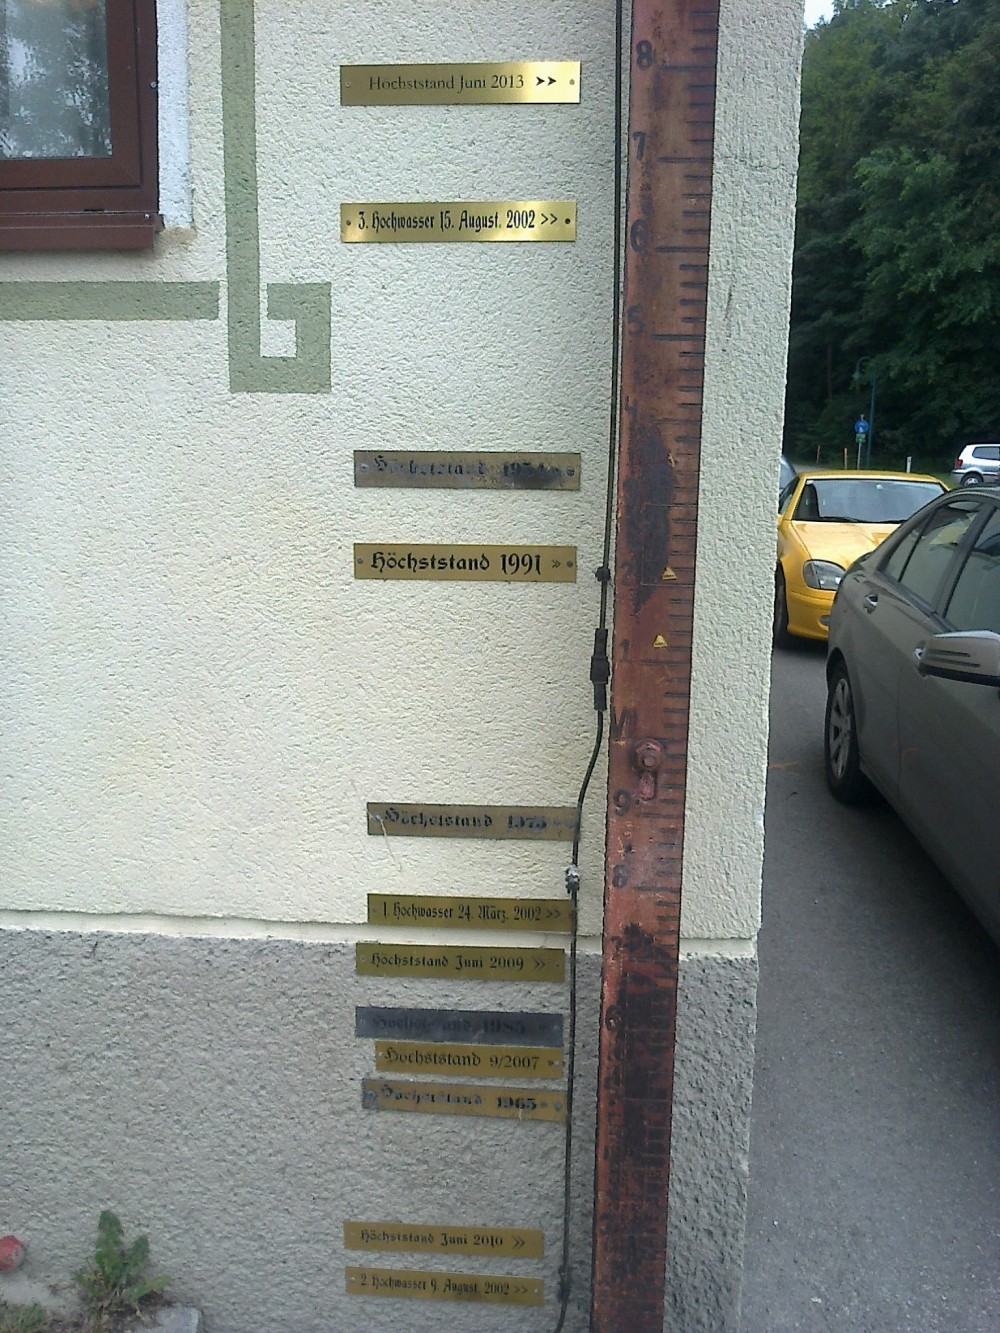 Höchststand des Hochwassers voriges Jahr im Juni, in etwa 2m Höhe :-( - Humer's Uferhaus - Orth an der Donau